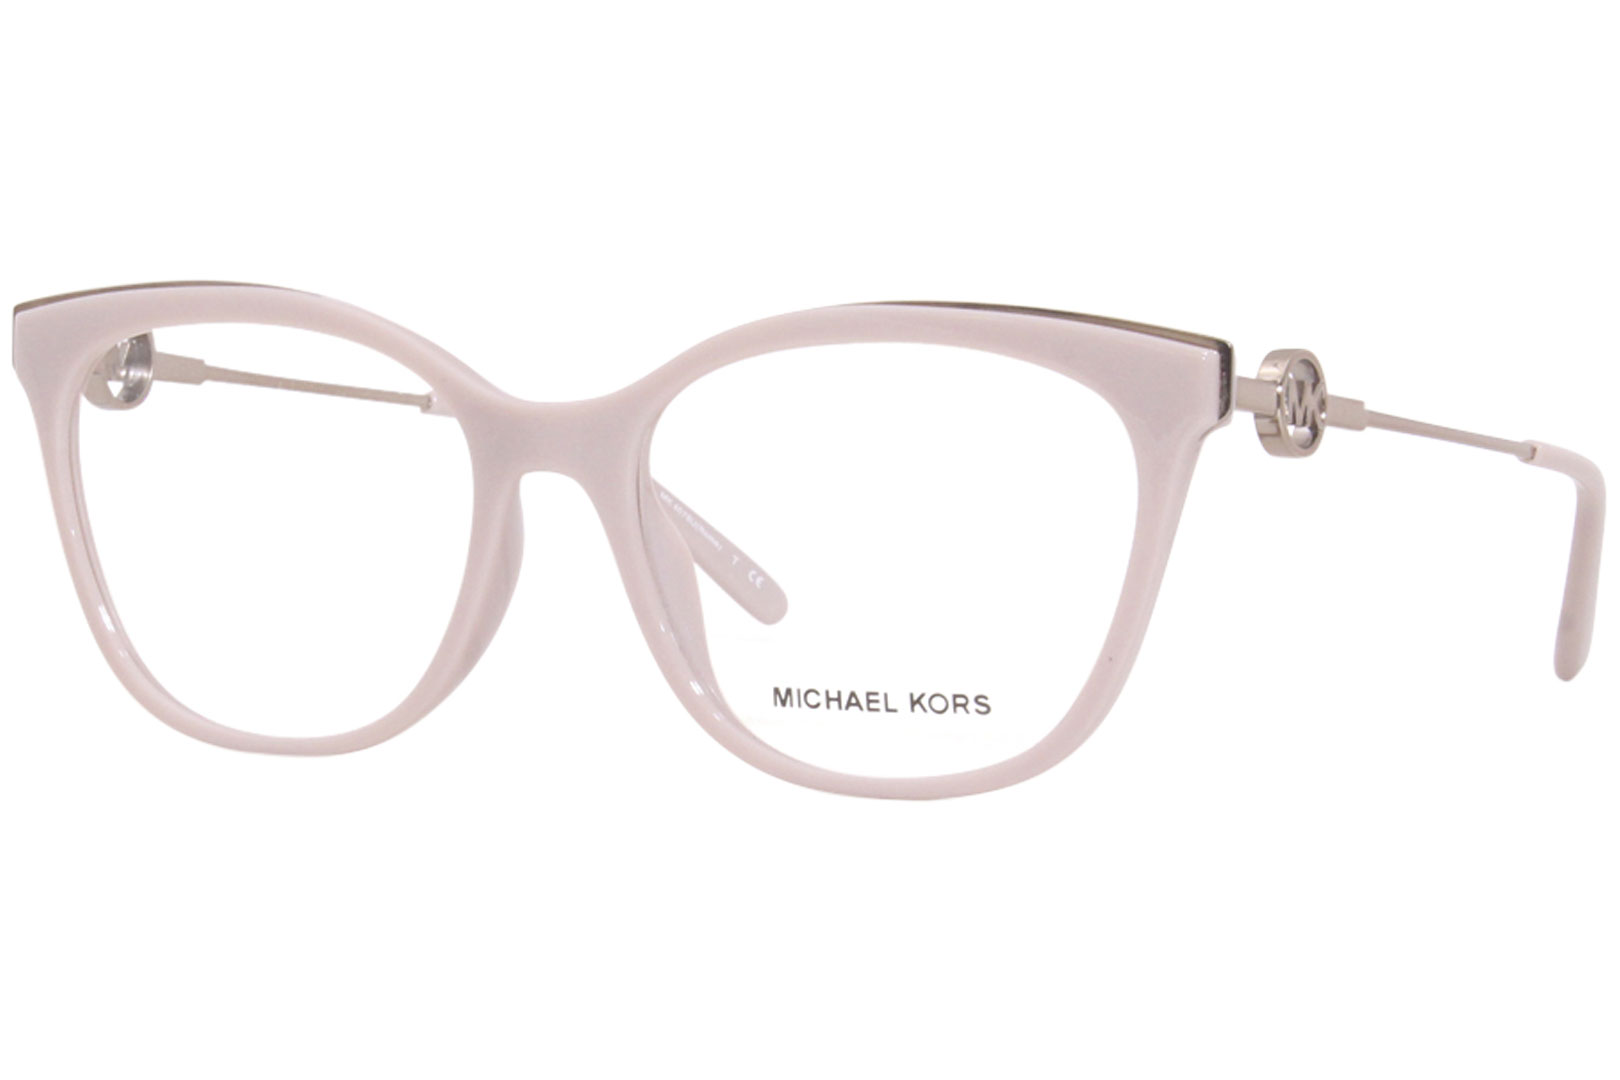 Michael Kors Sunglasses Frame Only MK 5007 hvar 10432L  Etsy Hong Kong